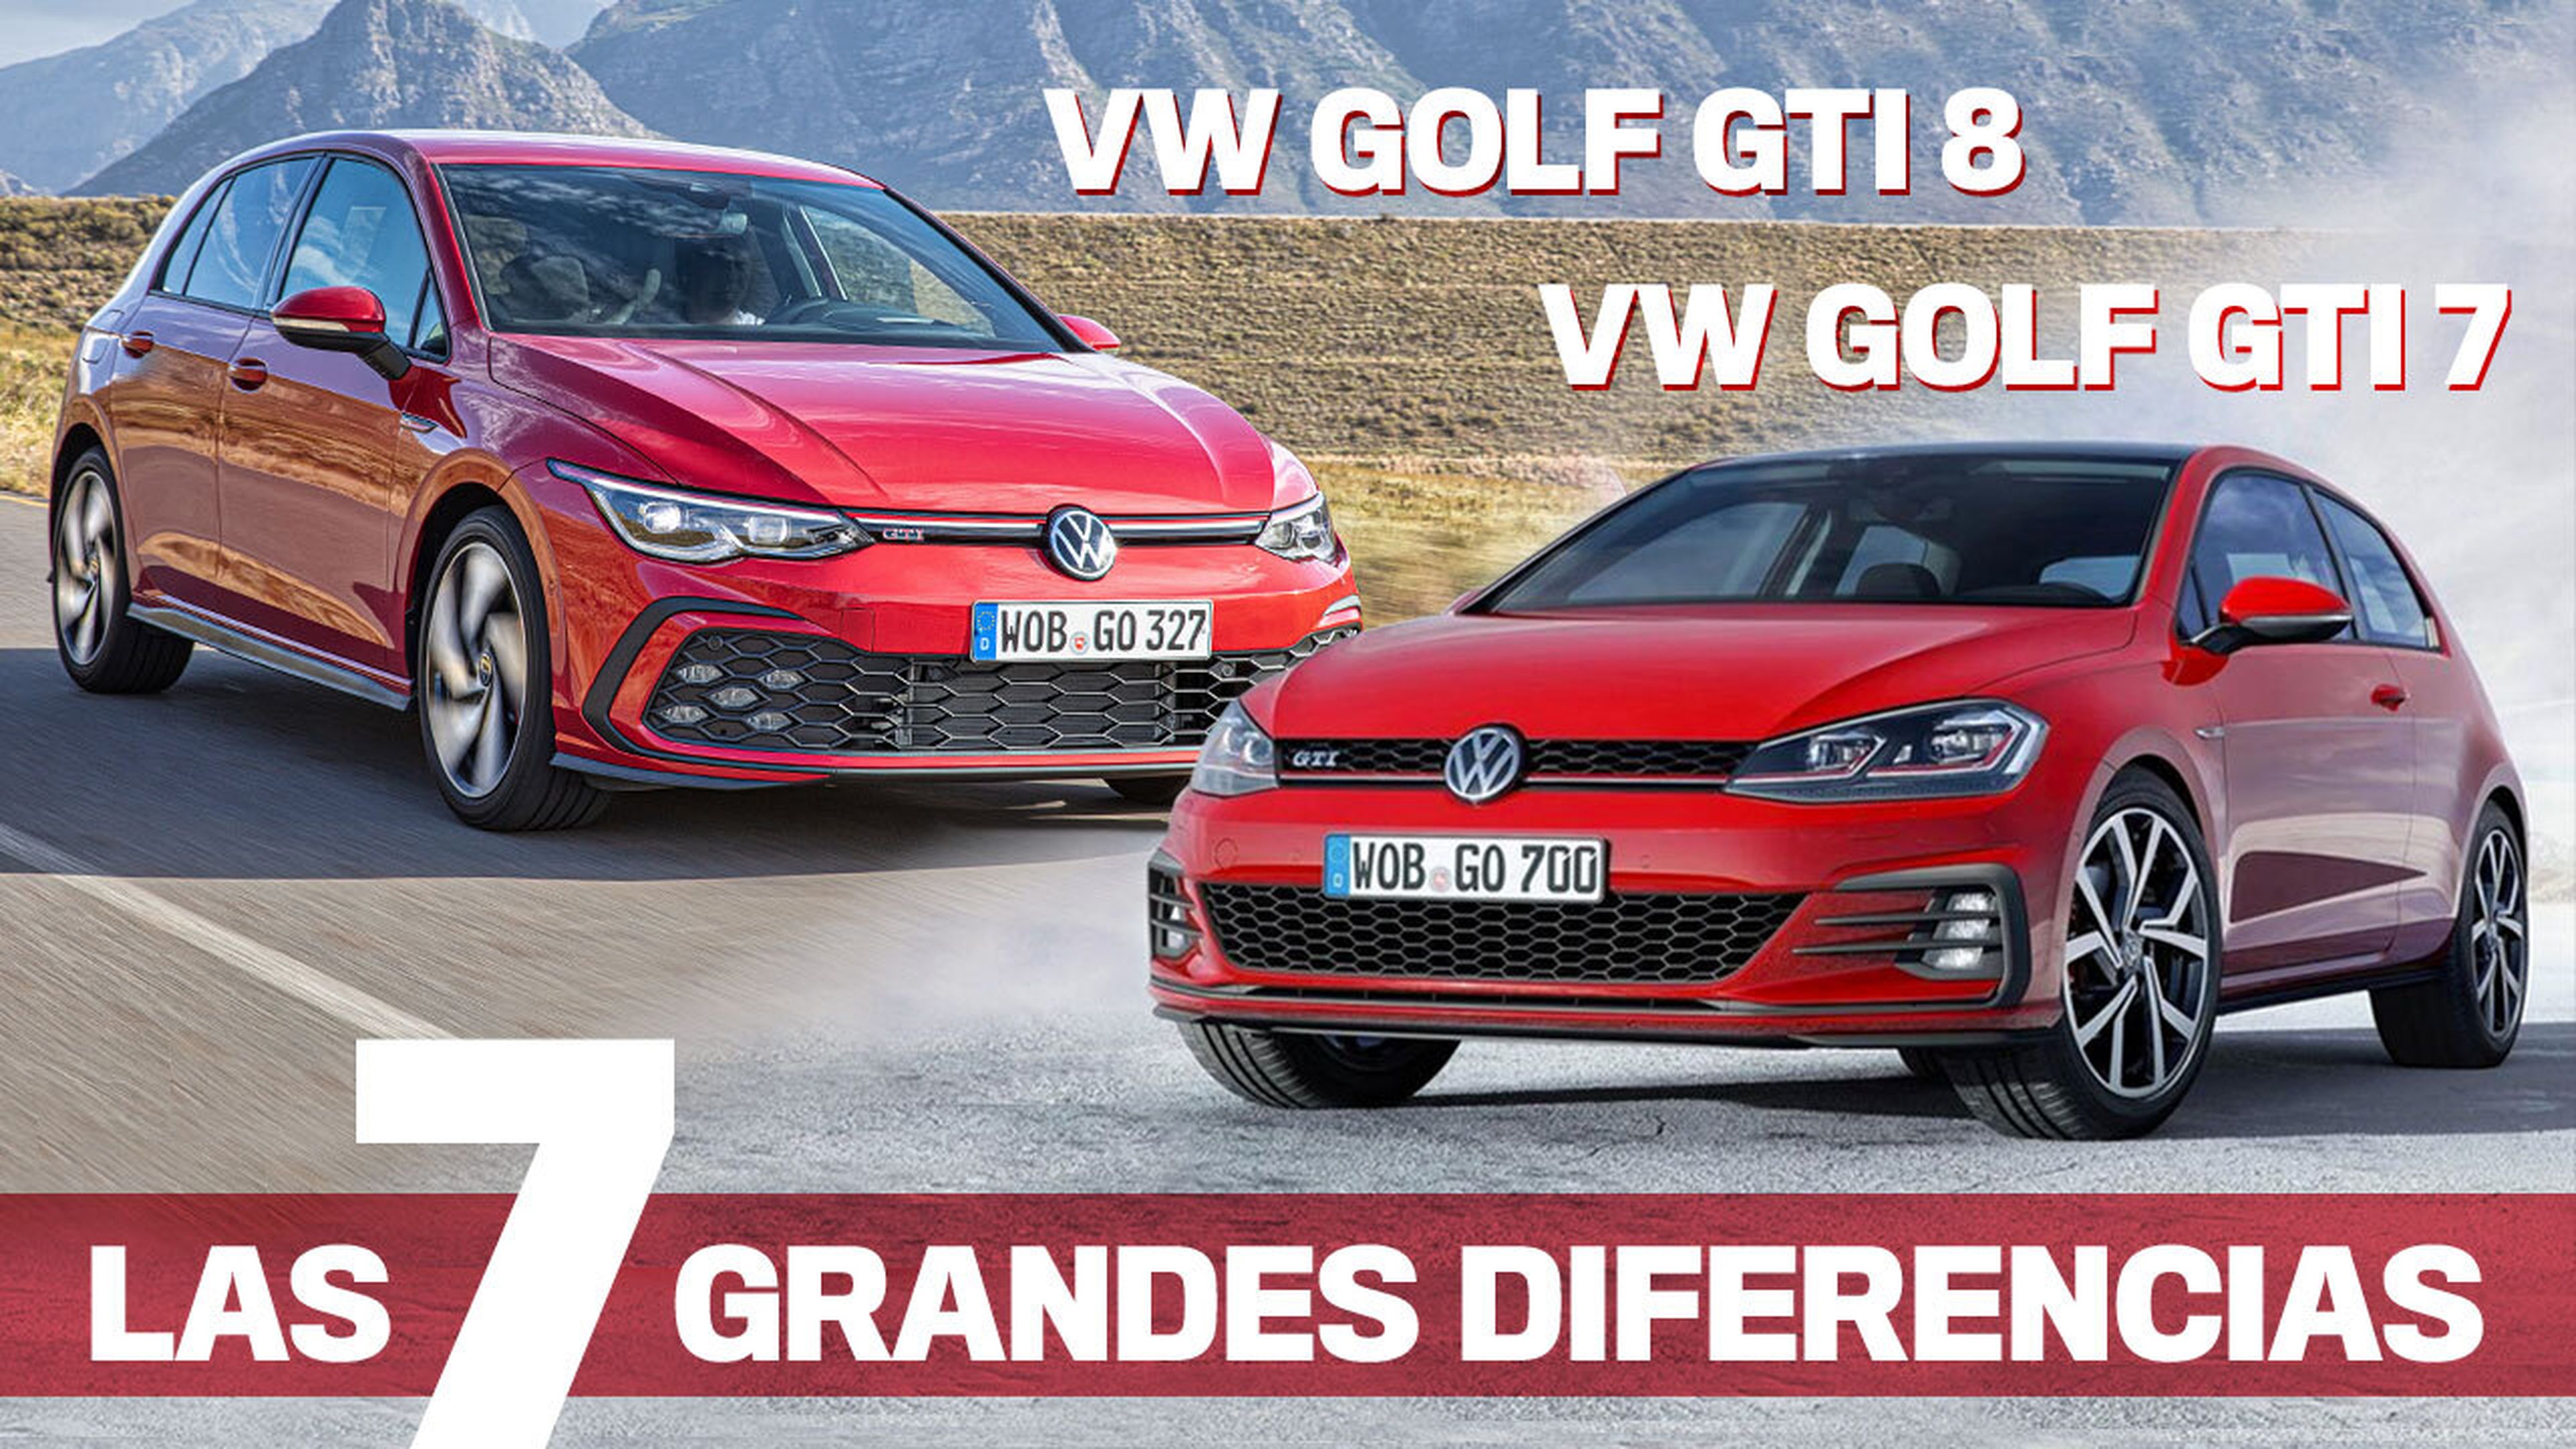 Las 7 grandes diferencias entre el VW Golf GTI 8 y el GTI 7